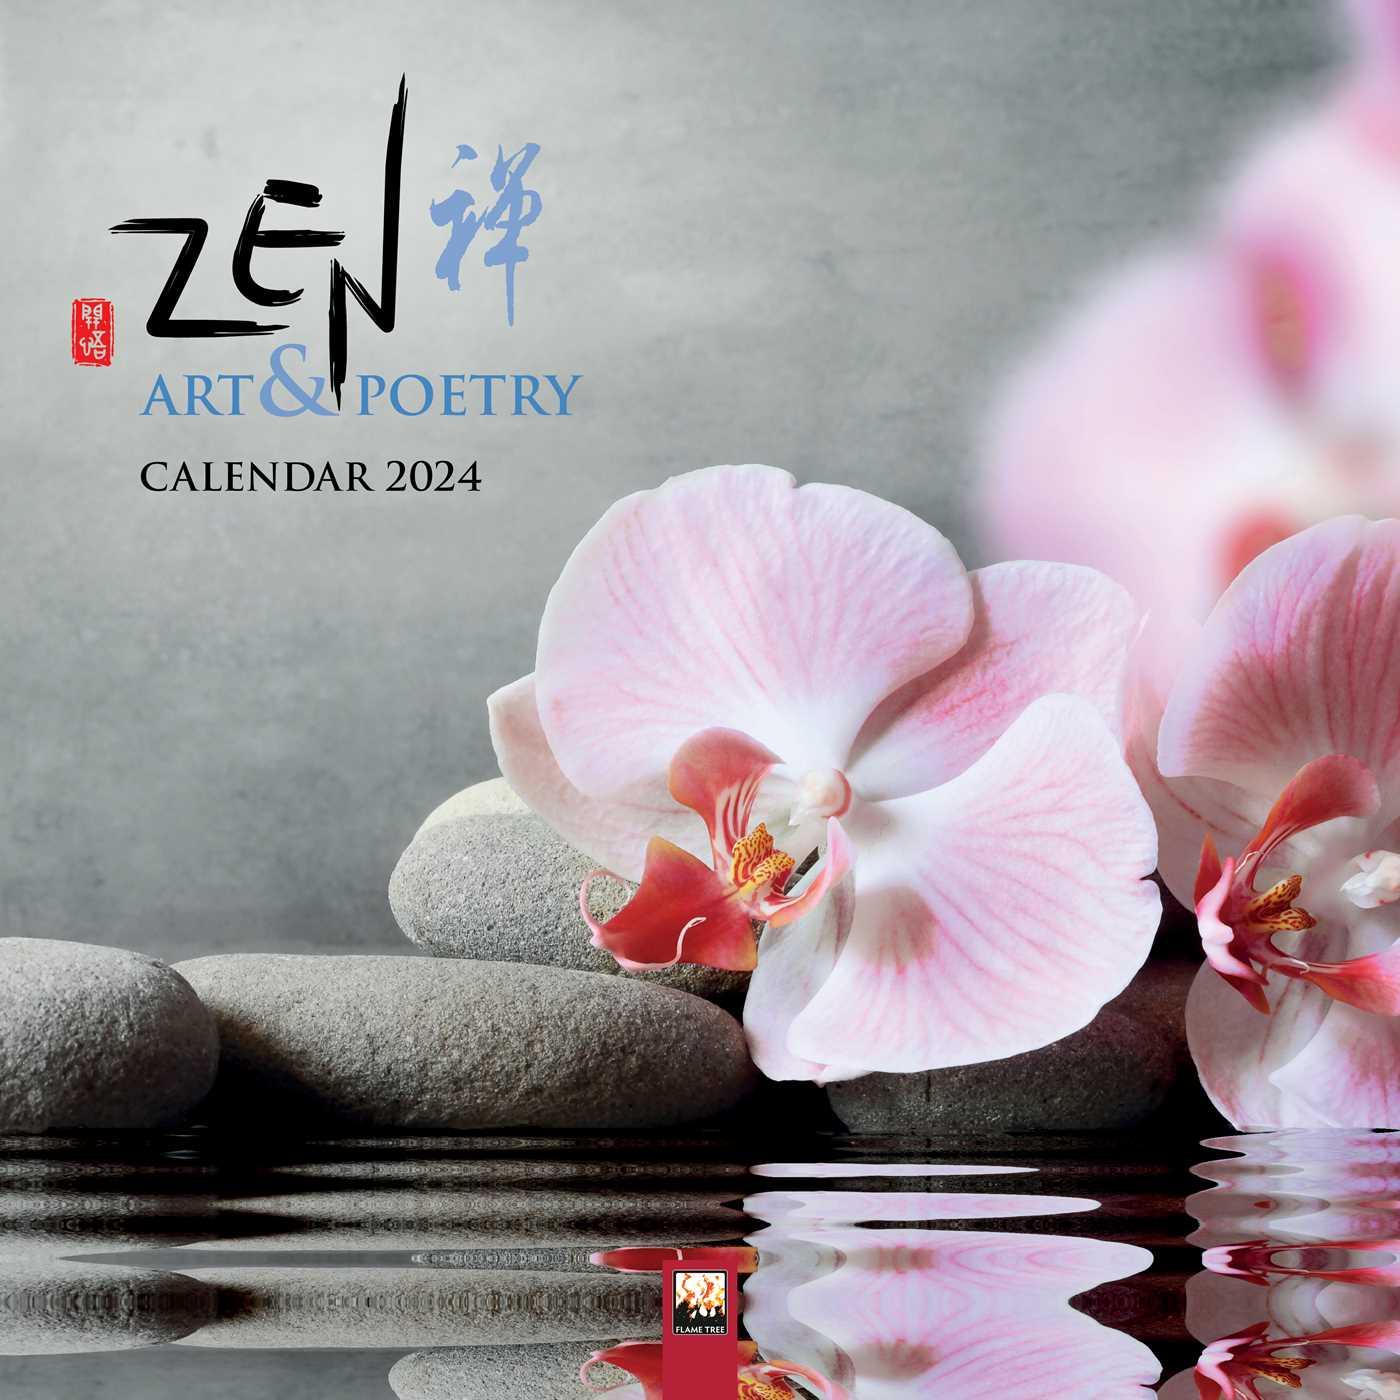 Kalendár/Diár Zen Art & Poetry Wall Calendar 2024 (Art Calendar) 